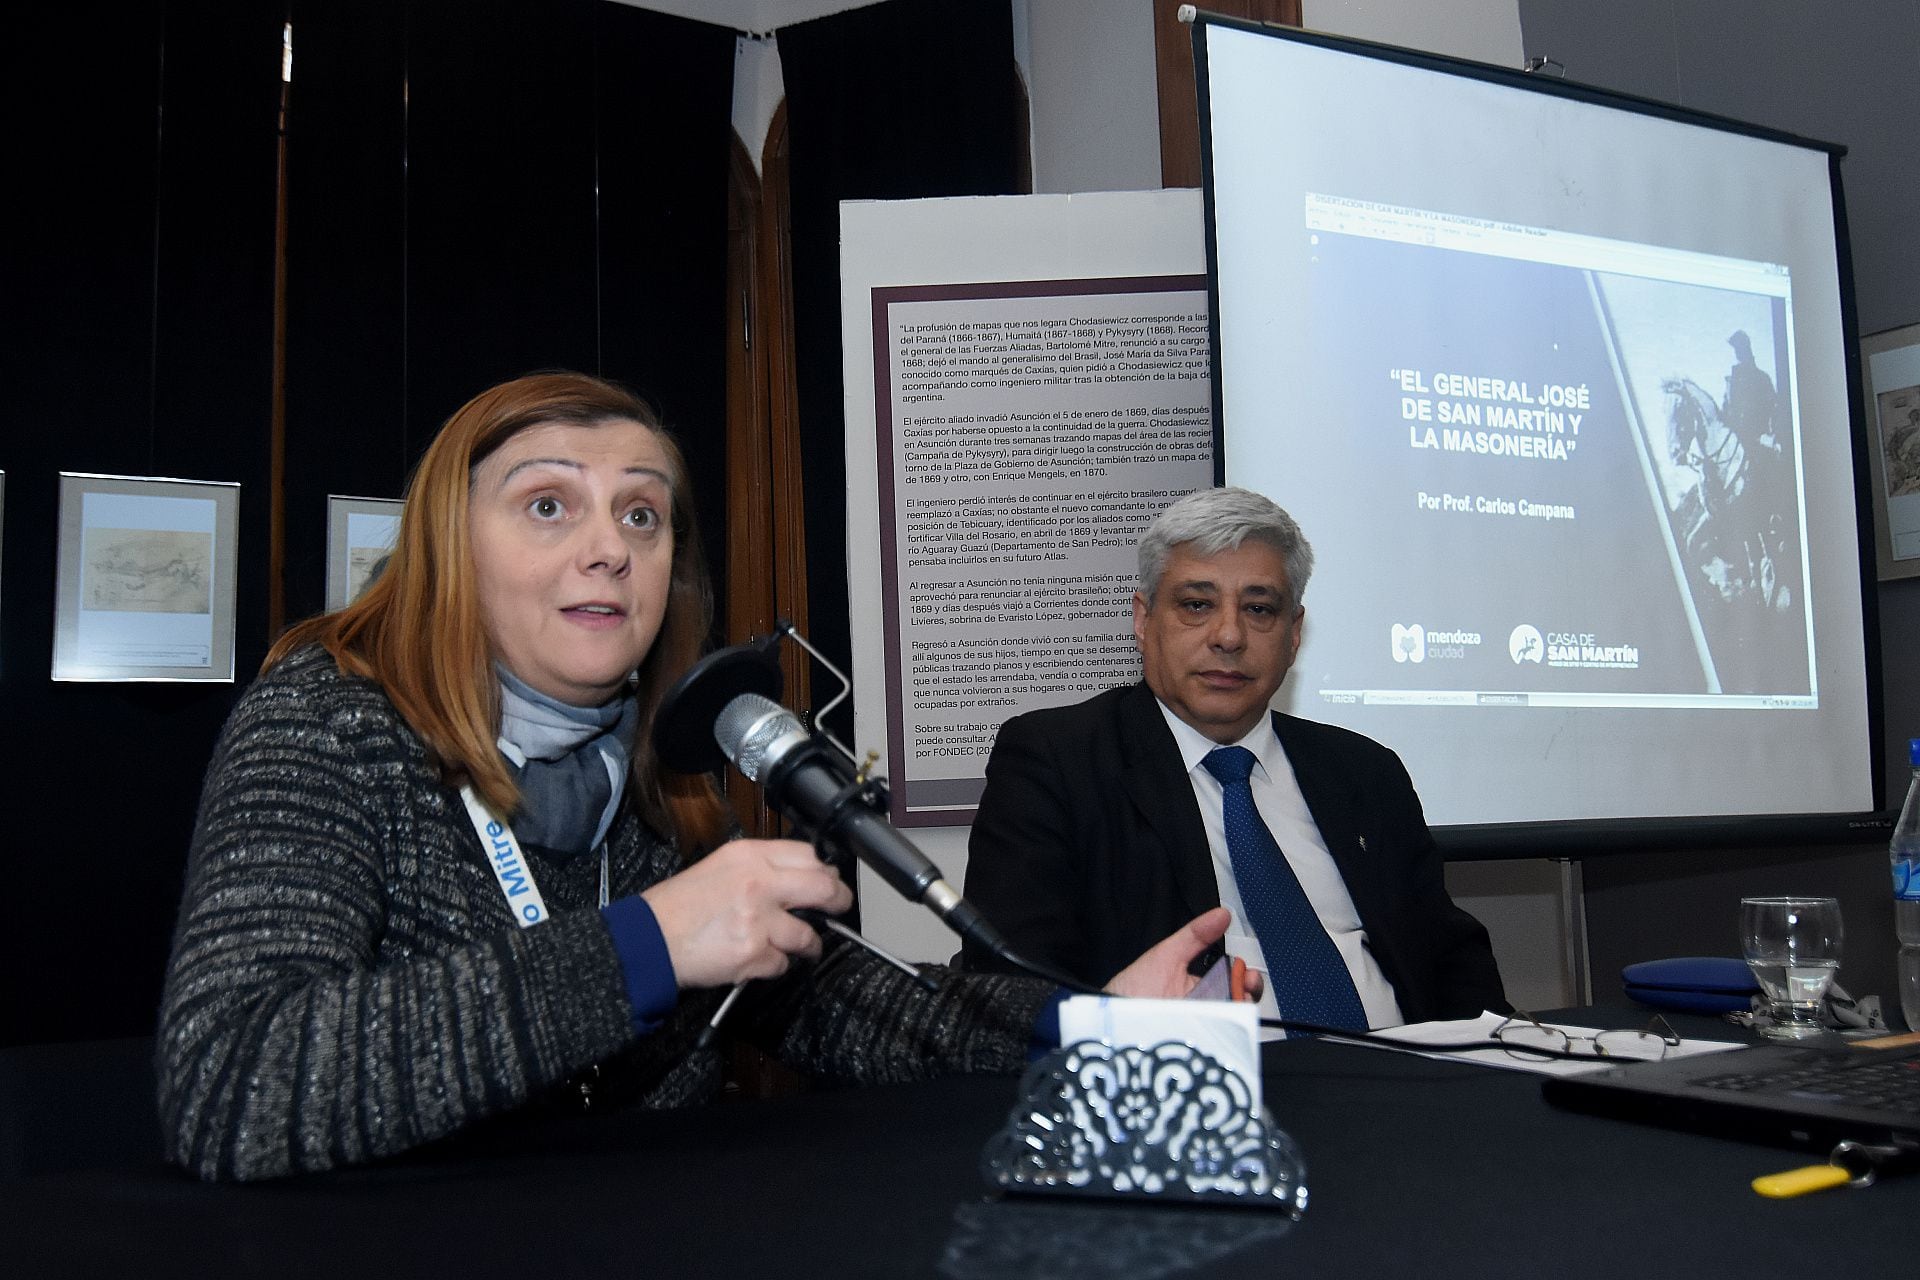 La charla fue presentaada por la Lic. Gabriela Mirande Lamedica, directora del Museo Mitre